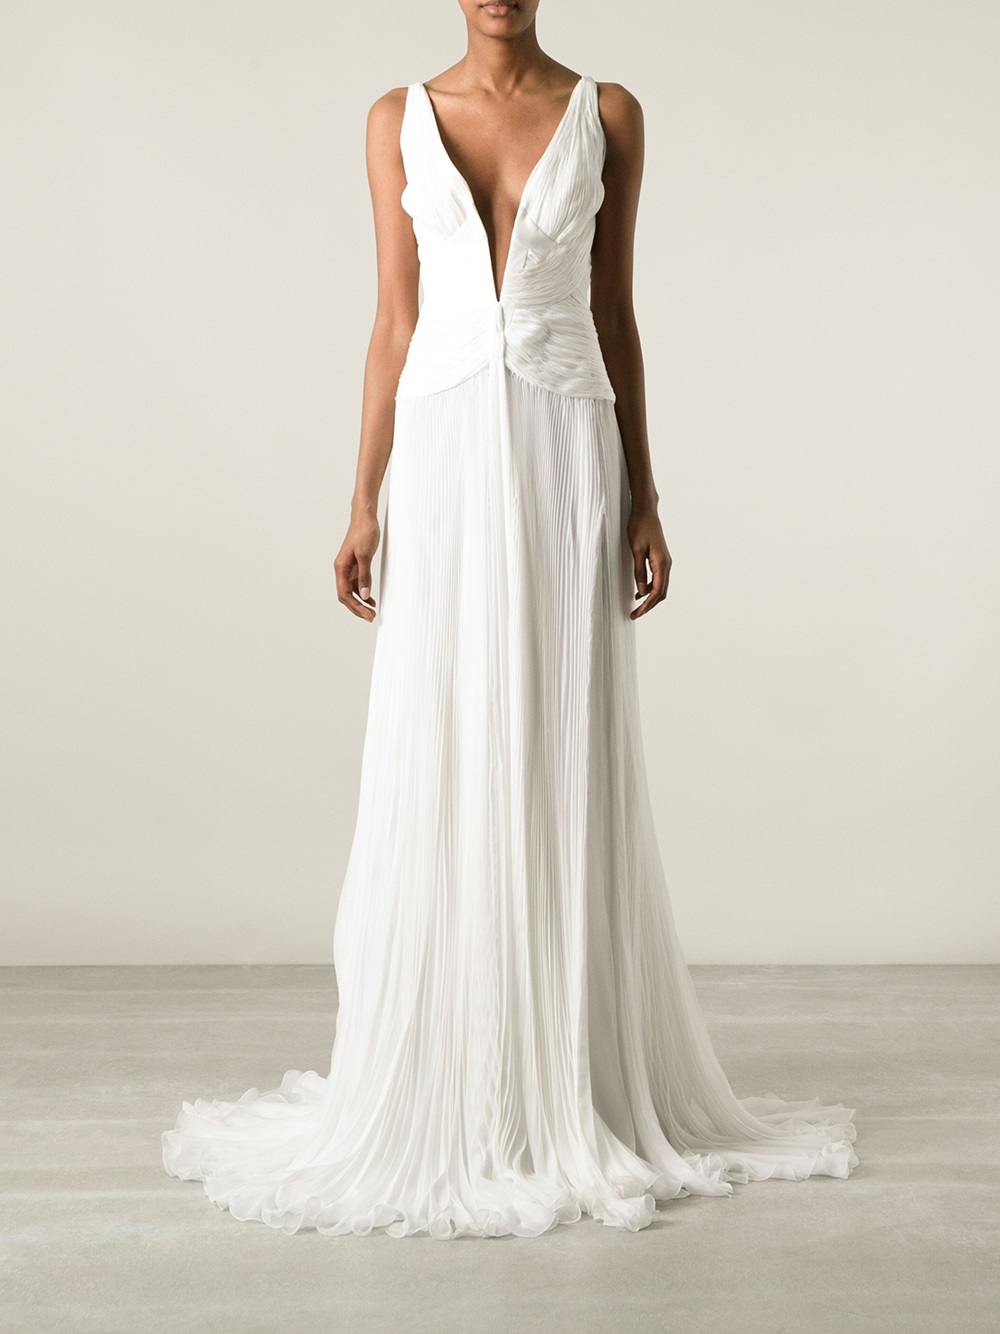 Roberto Cavalli Plunge Neck Evening Dress in White - Lyst